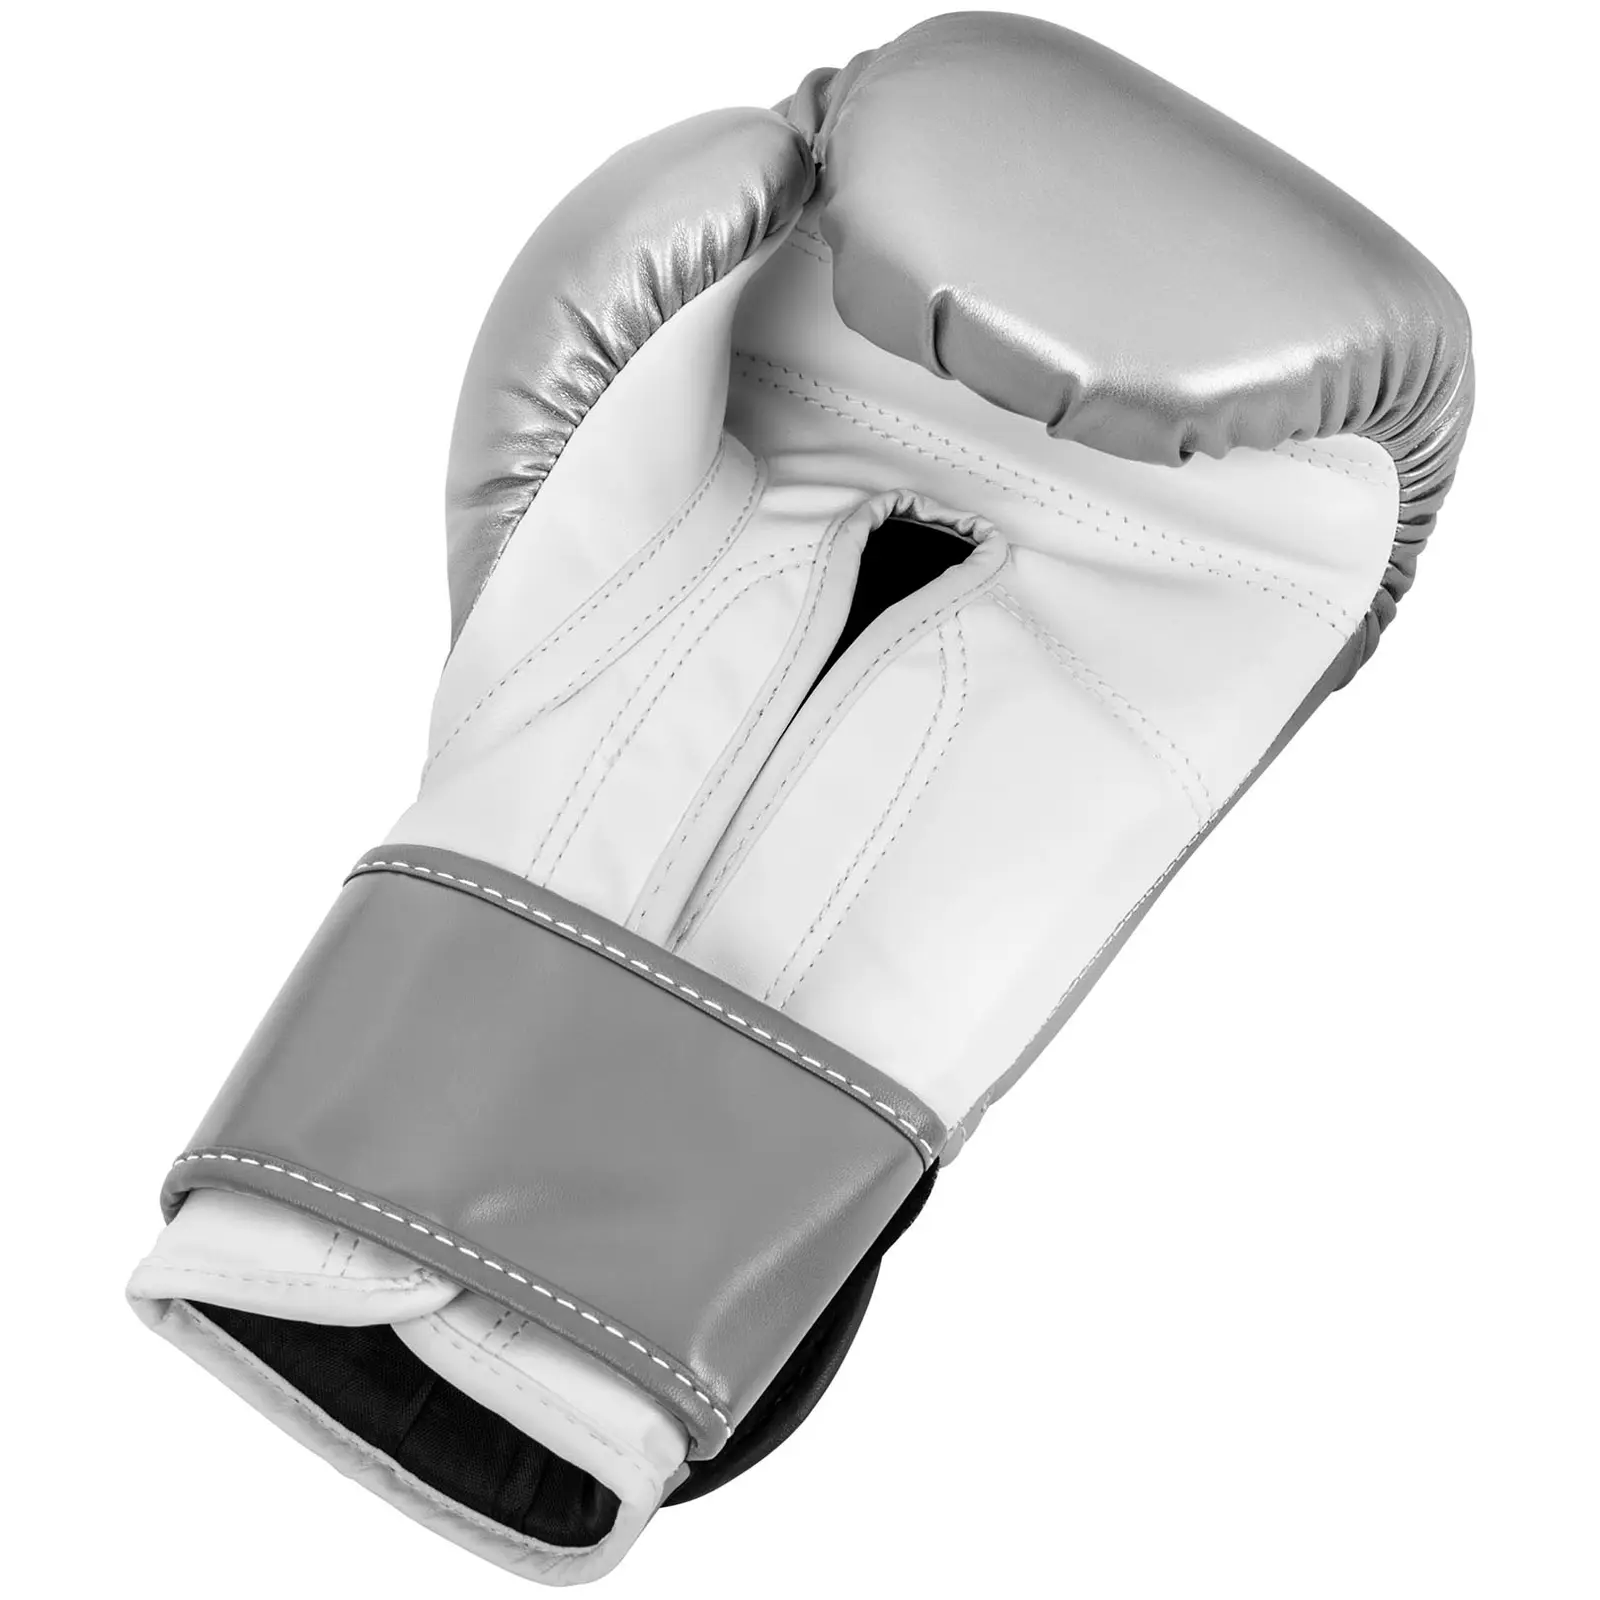 Boxhandschuhe - 12 oz - metallic-silbern und weiß